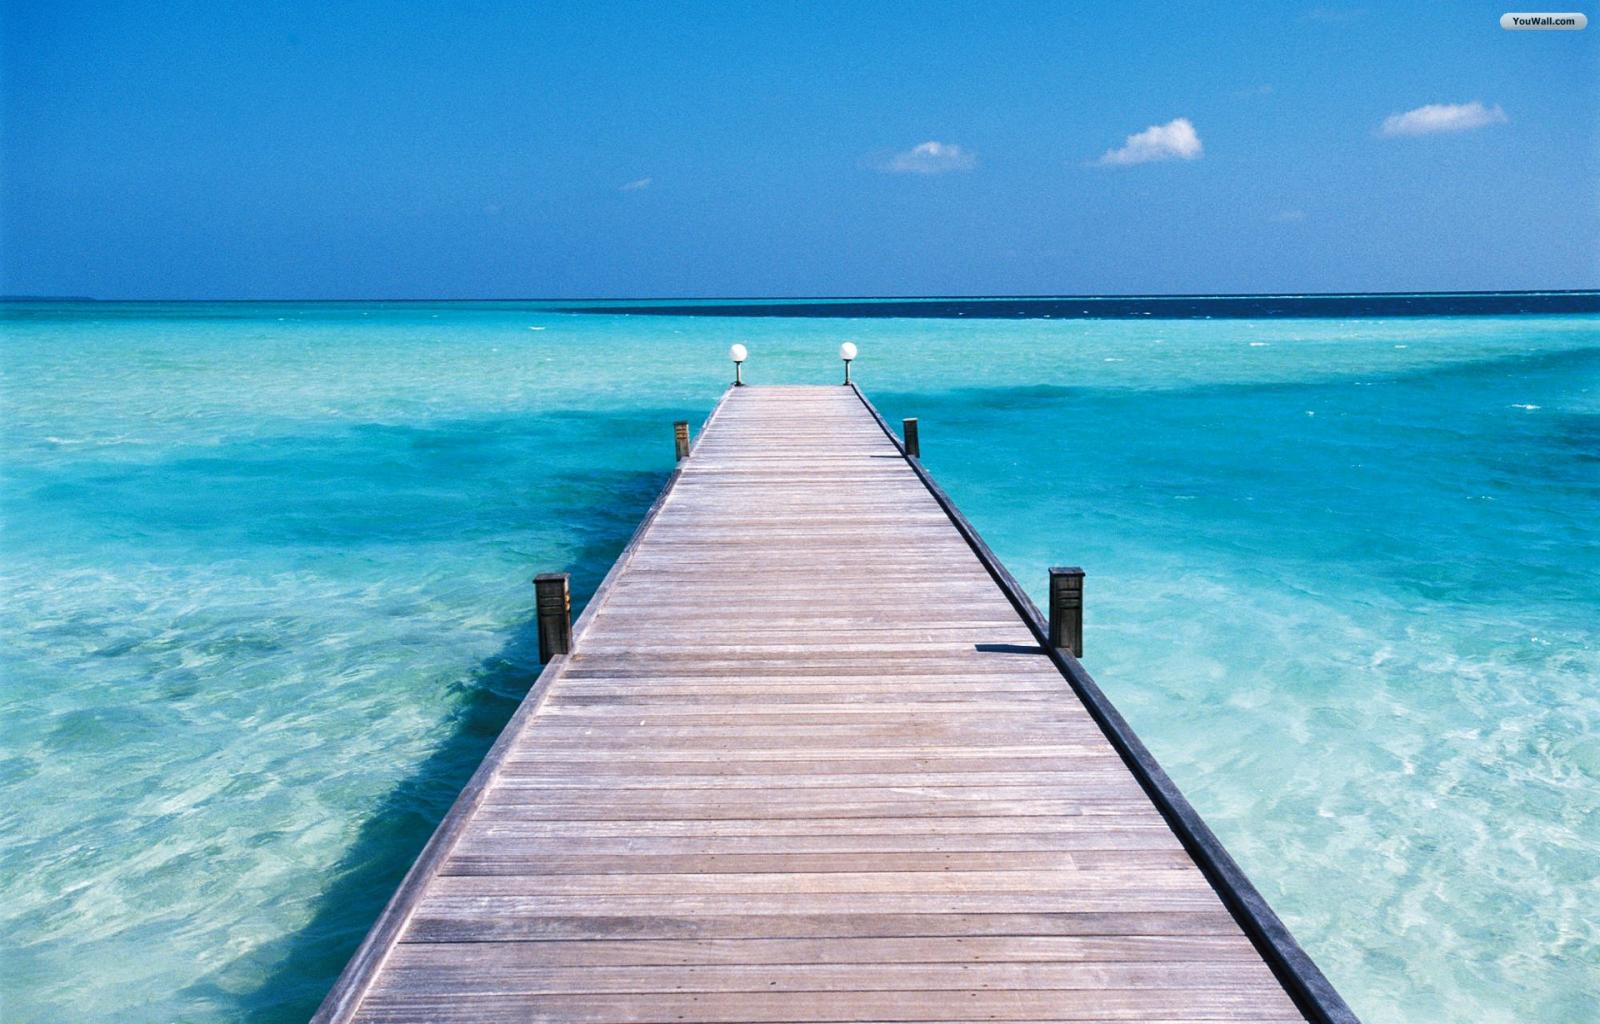 Boardwalk into ocean